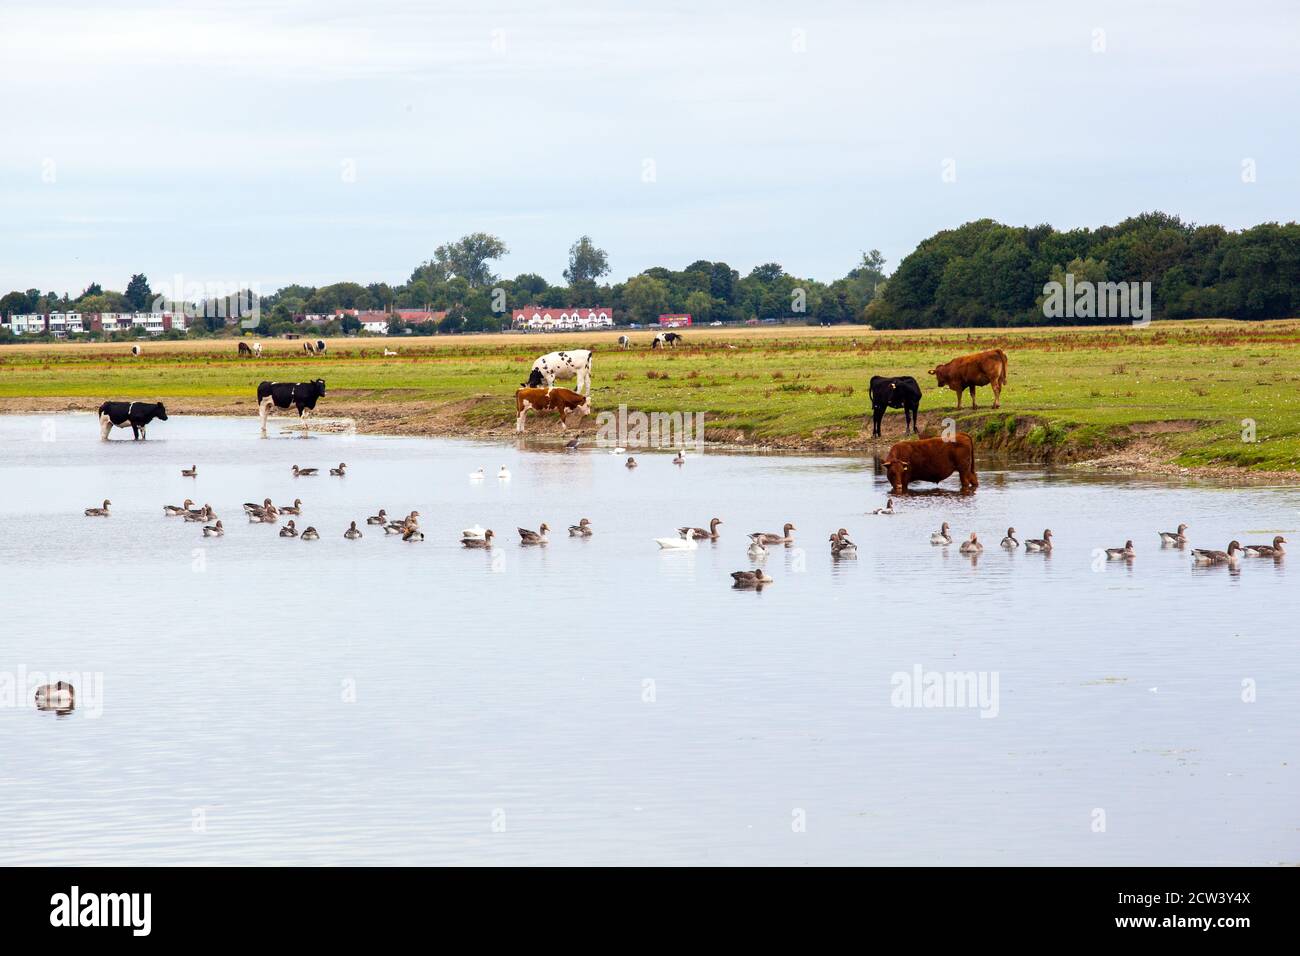 Vaches de bétail animaux de ferme debout dans la rivière Thames Oxfordshire Angleterre Banque D'Images